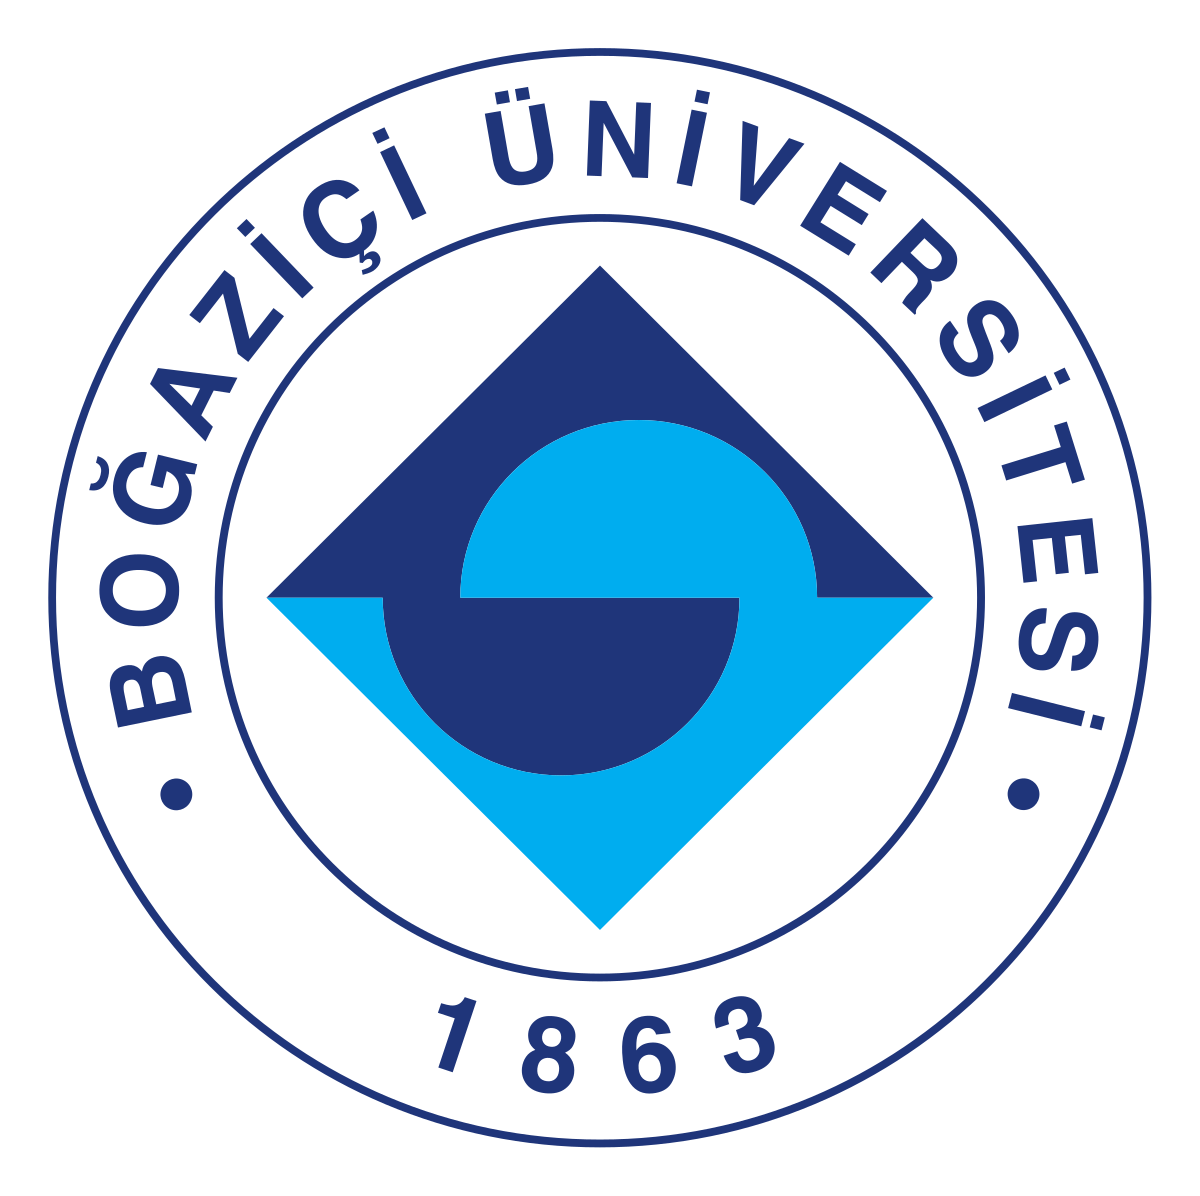 Bogazici University logo